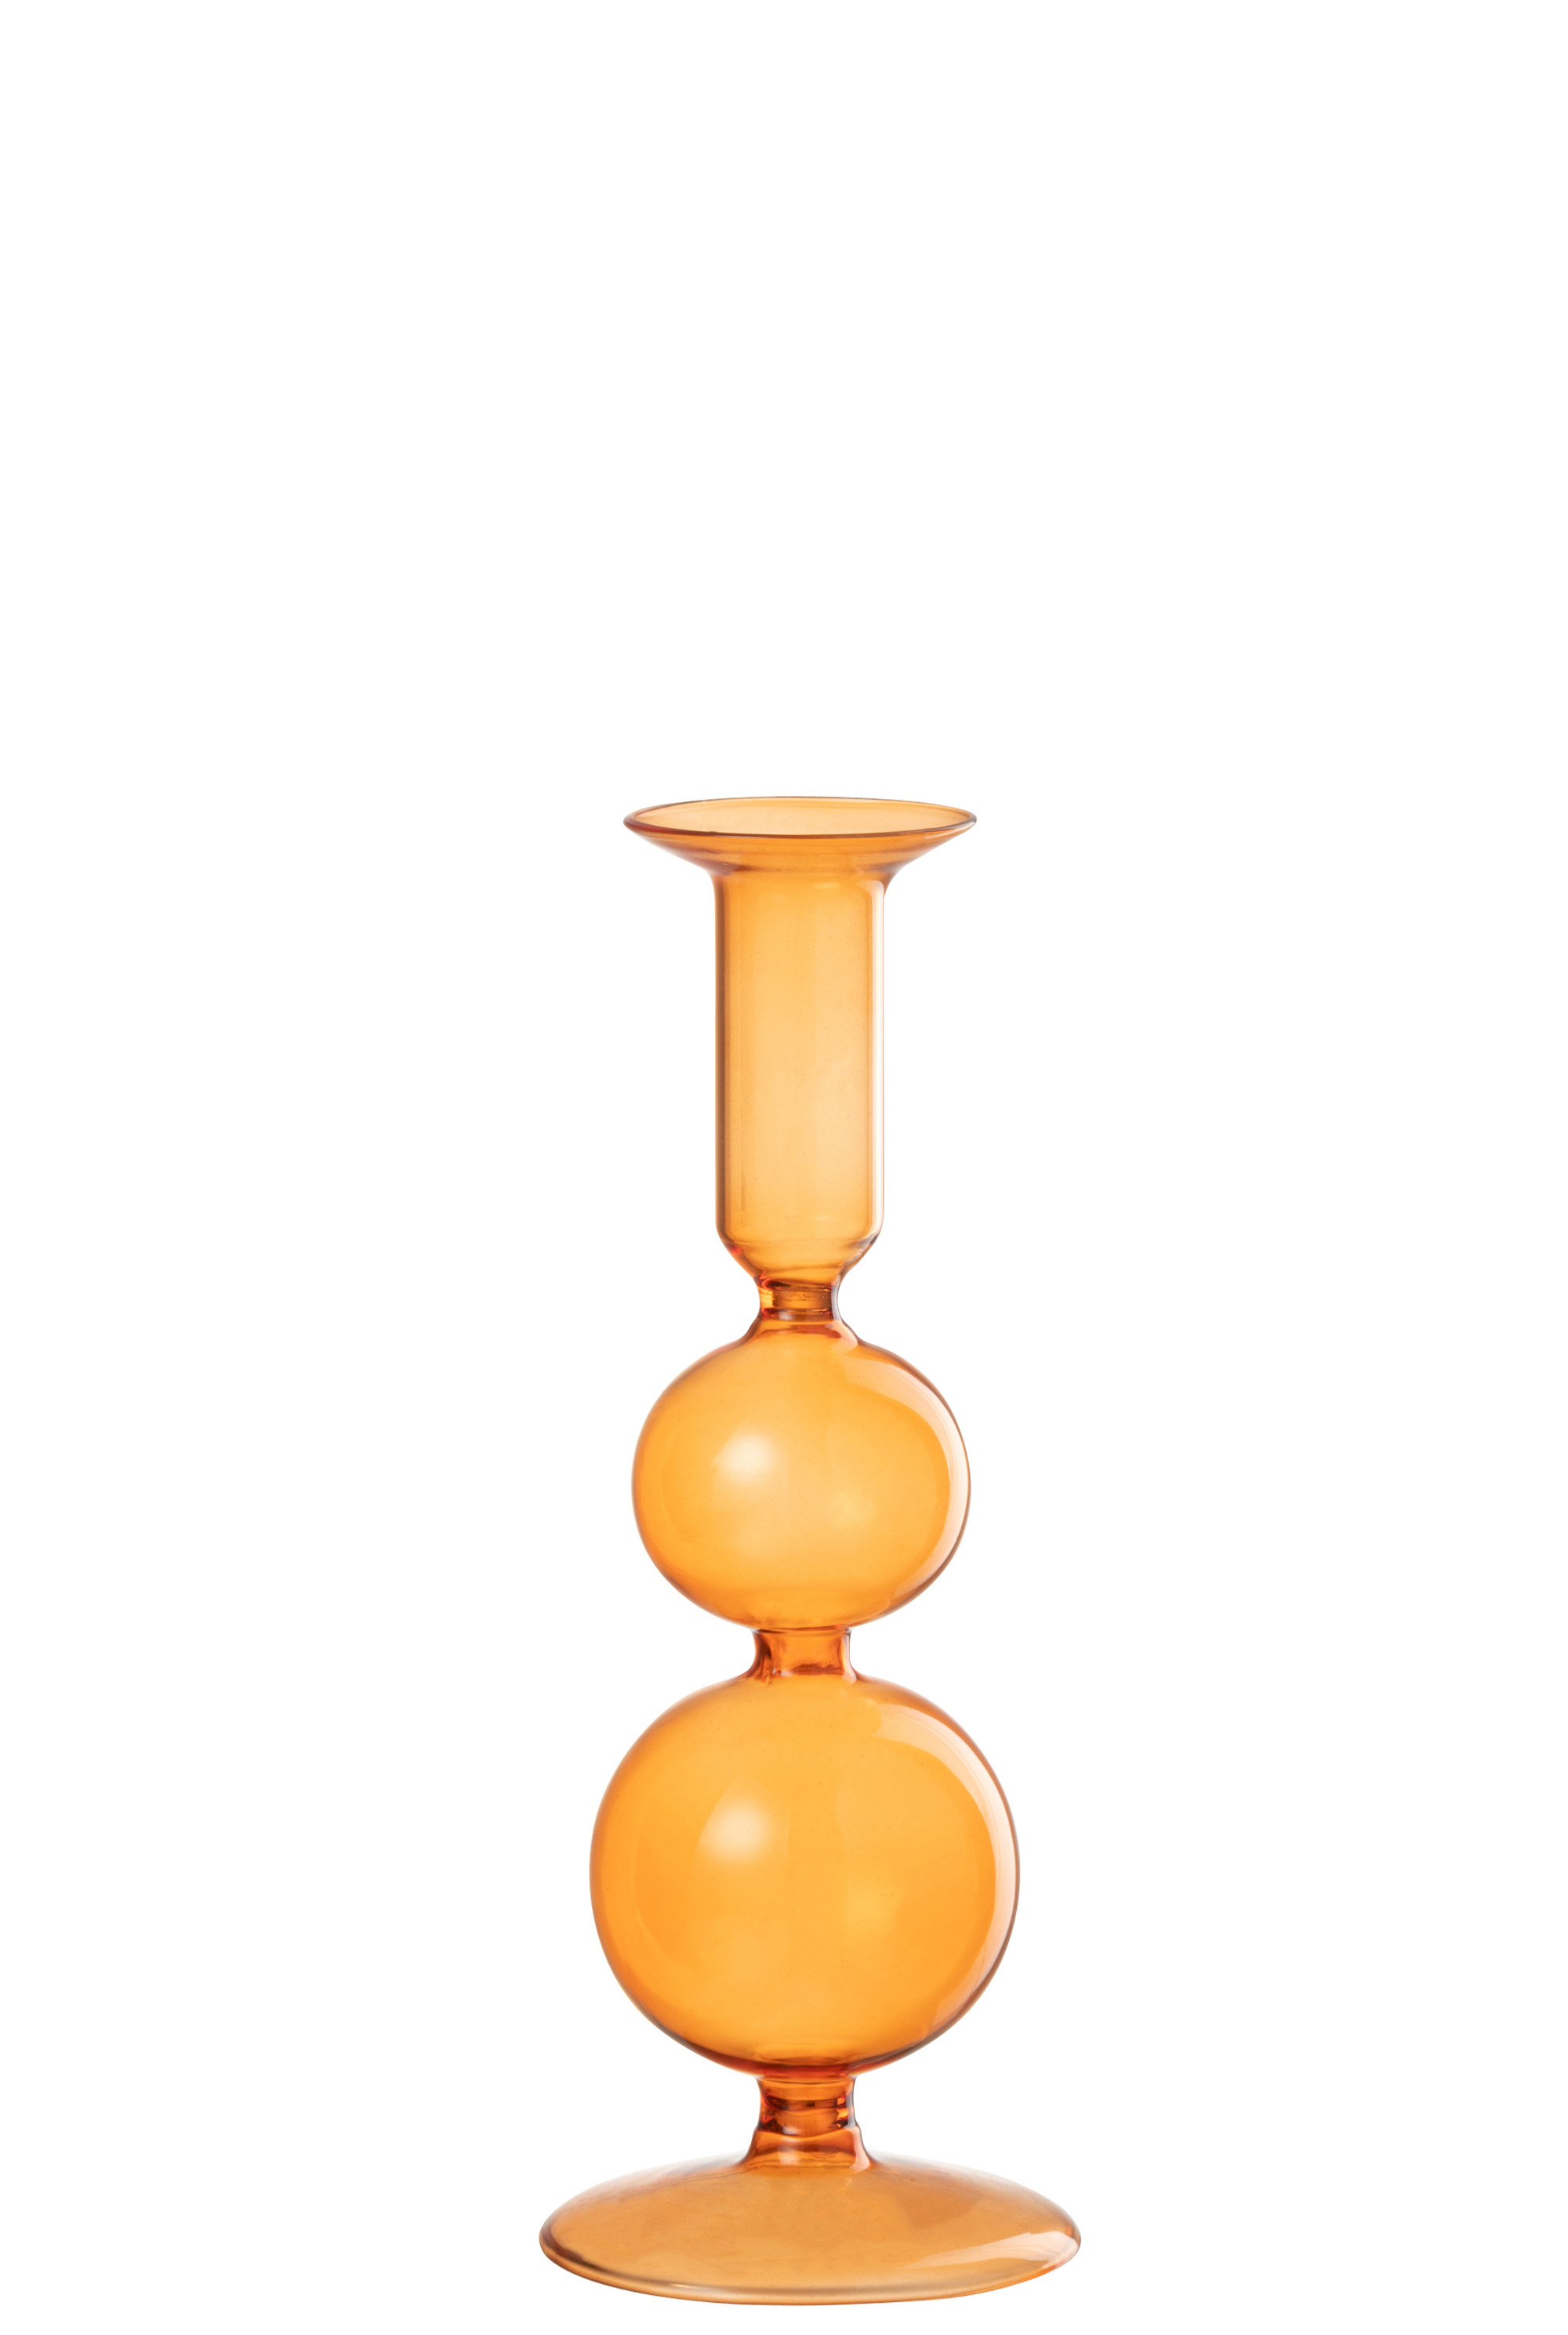 JLine Candle Holder 2 Orbs Glass Orange Large